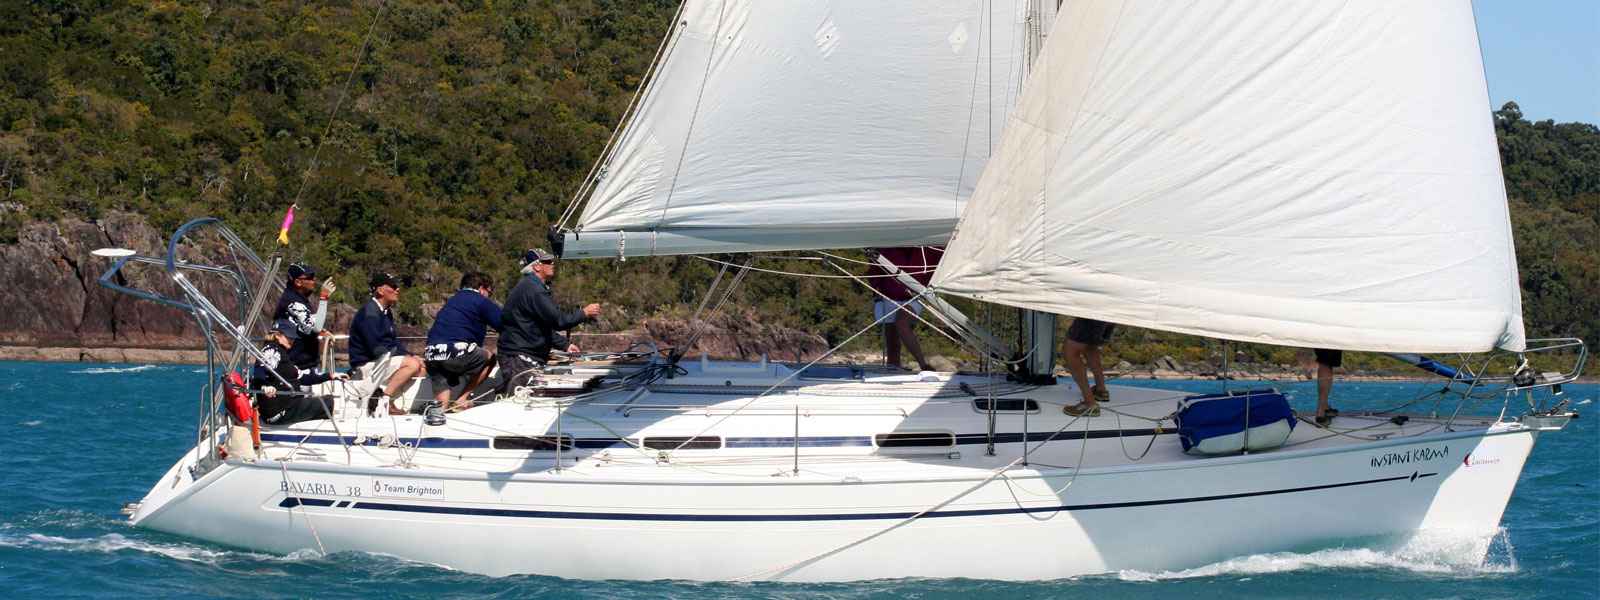 Sailboat Bavaria 38